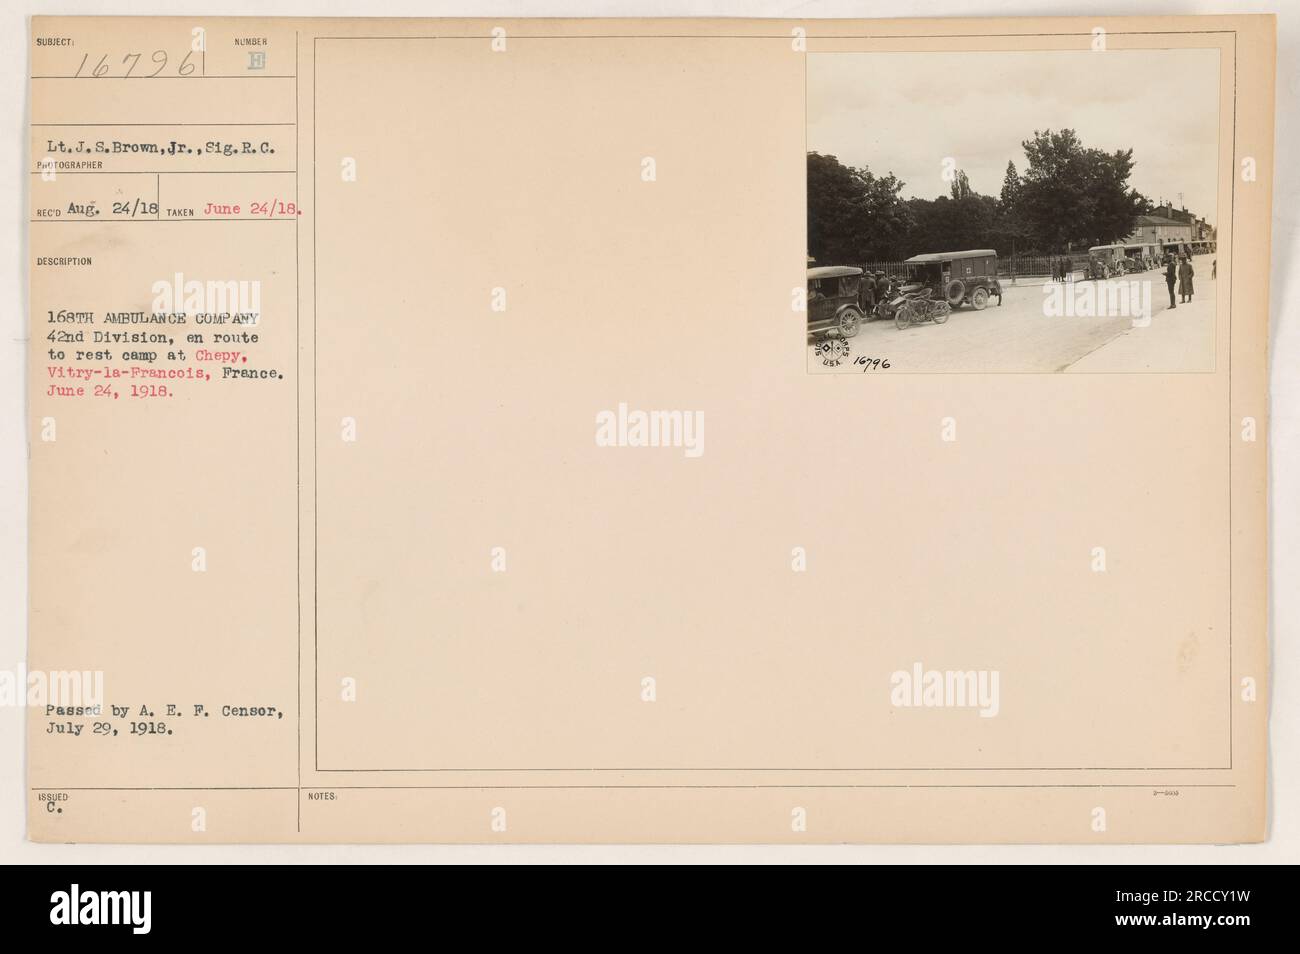 Tenente J.S. Brown, Jr., della 168a Ambulance Company nella 42a Divisione, è visto con Sig. R. C. in questa foto scattata il 24 giugno 1918. Sono in viaggio verso il campo di riposo di Chepy a Vitry-la-Francois, in Francia. La foto è stata passata da A. E. e rilasciata dal Censor. Le note riportano il numero di identificazione della foto come 16796. Foto Stock